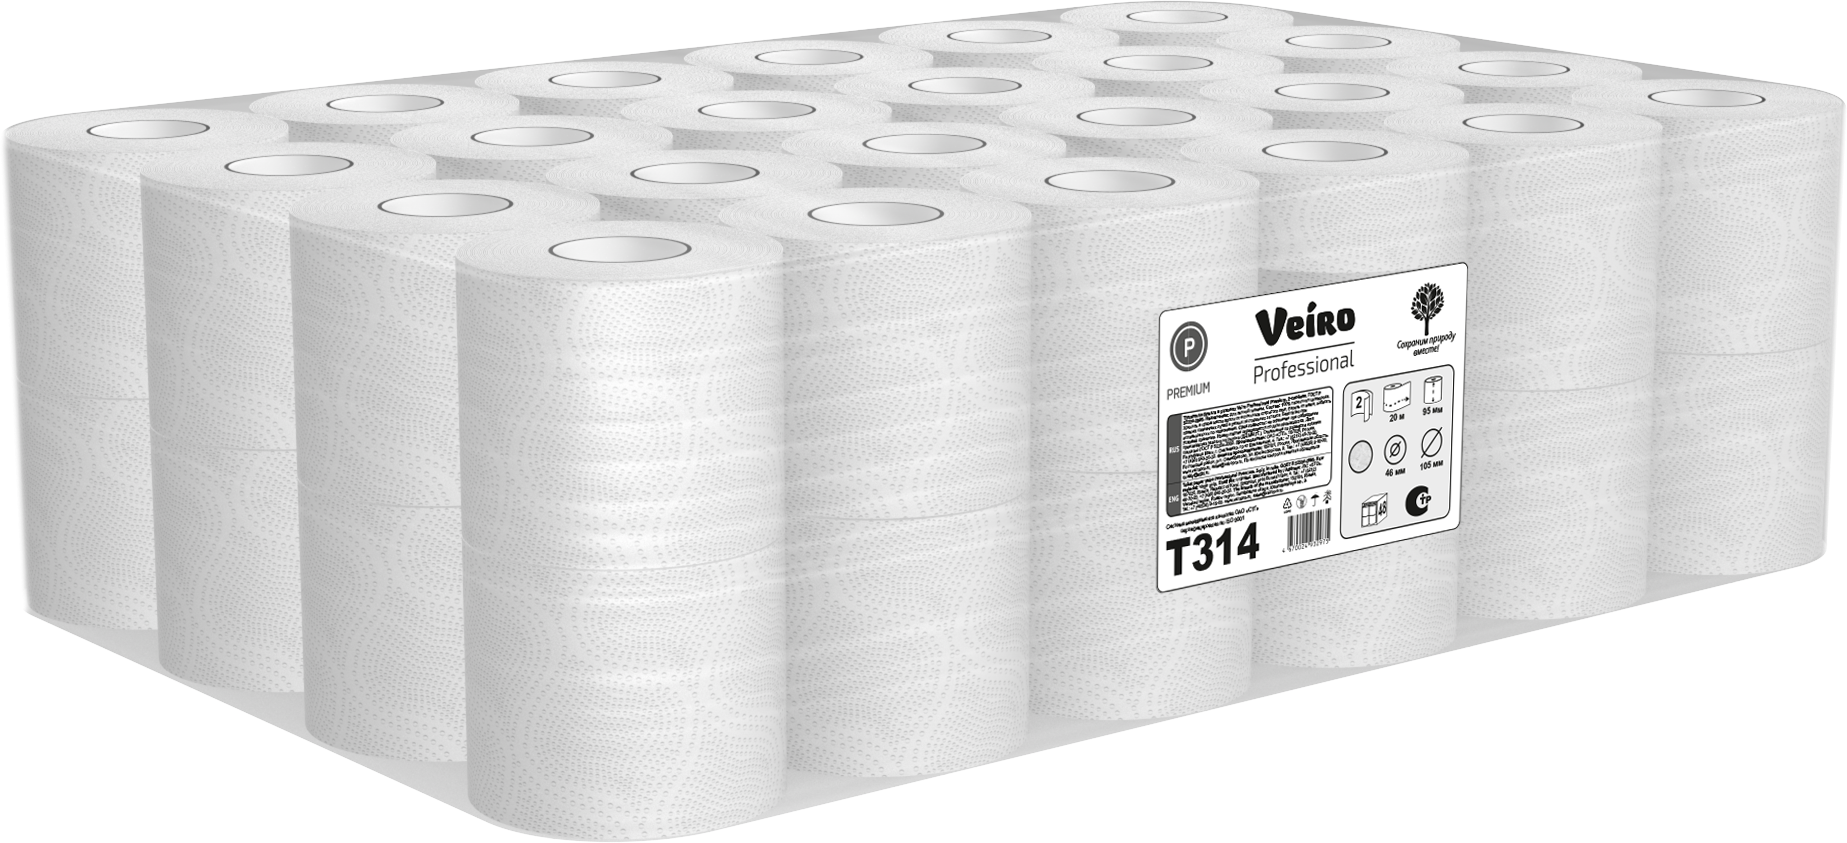 Туалетная бумага Veiro Professional Premium T314 двухслойная, 1 упаковка - 48 рулонов по 20 метров